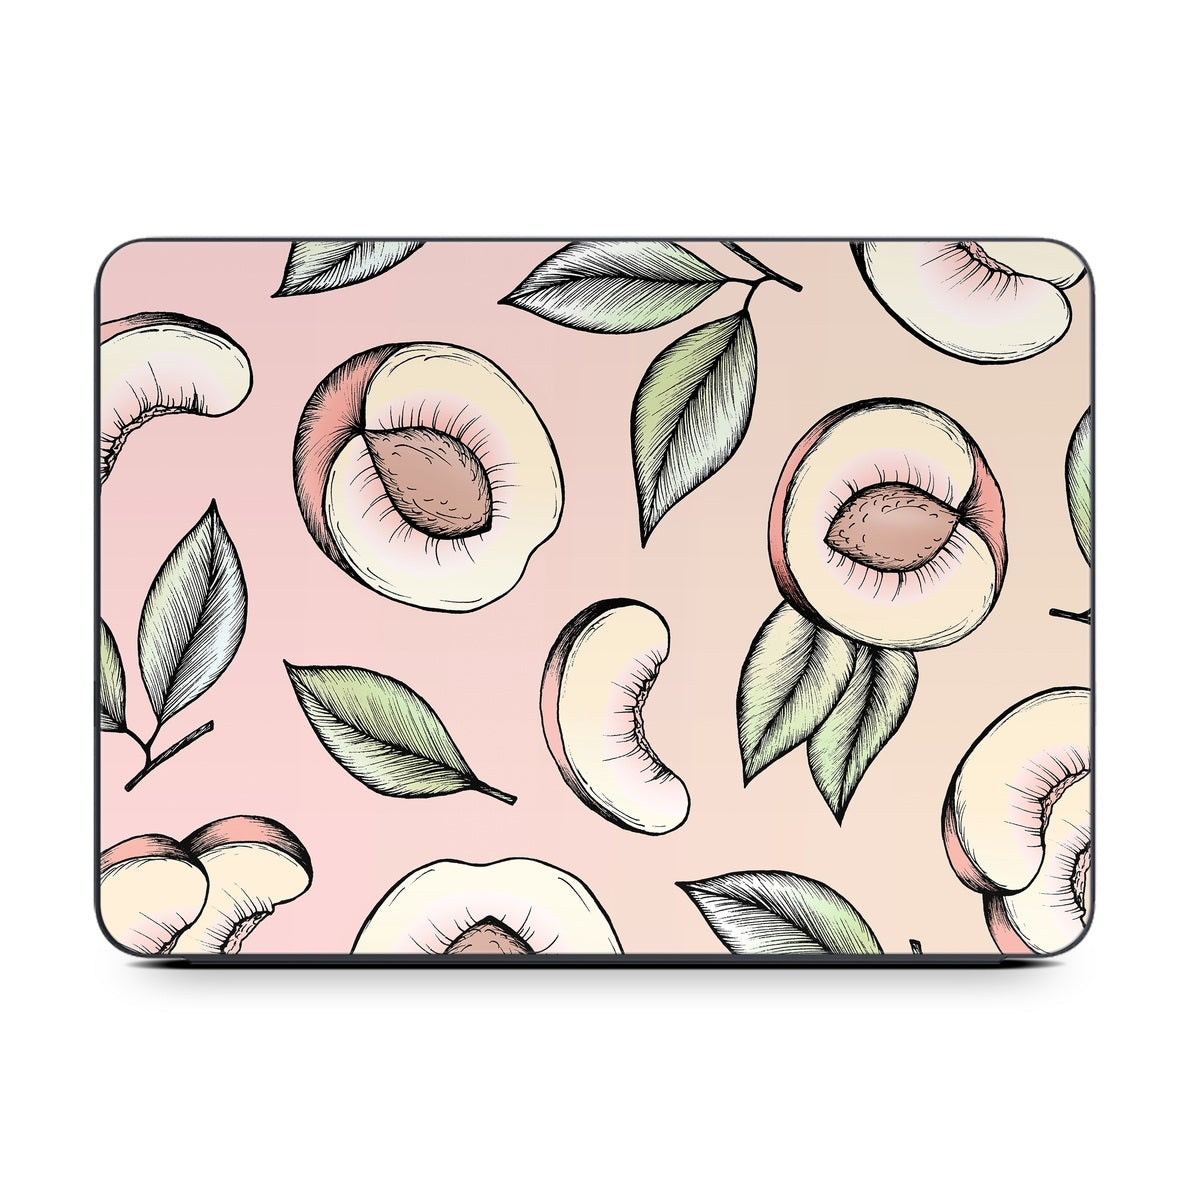 Peach Please - Apple Smart Keyboard Folio Skin